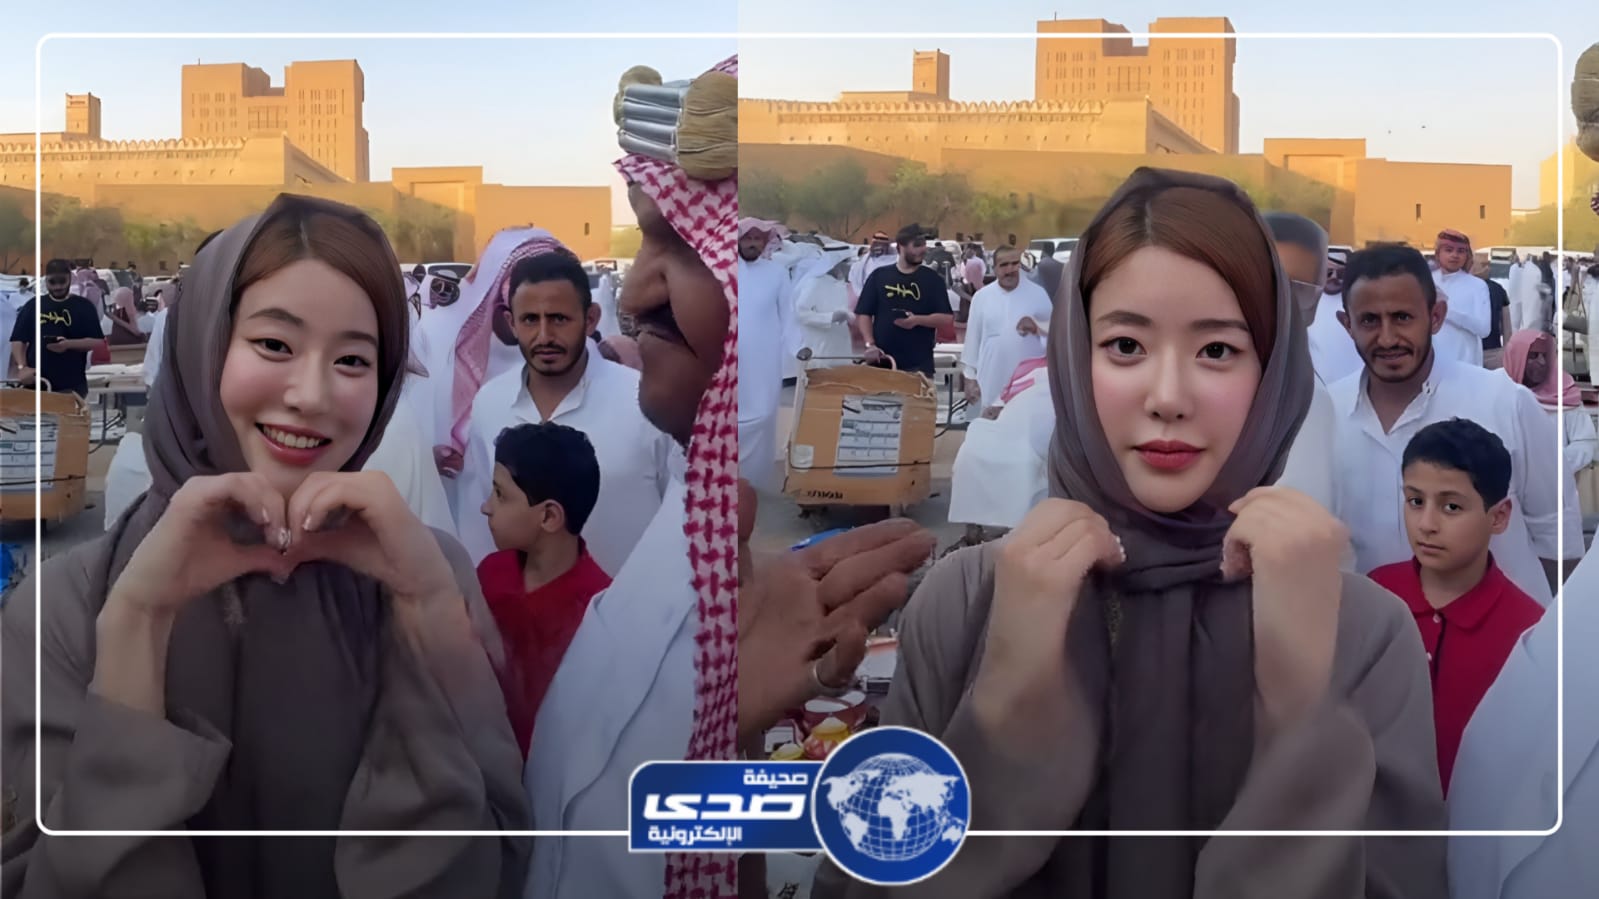 الفنانة الكورية سودا ترتدي الحجاب وتتجول في سوق الزل بالرياض .. فيديو